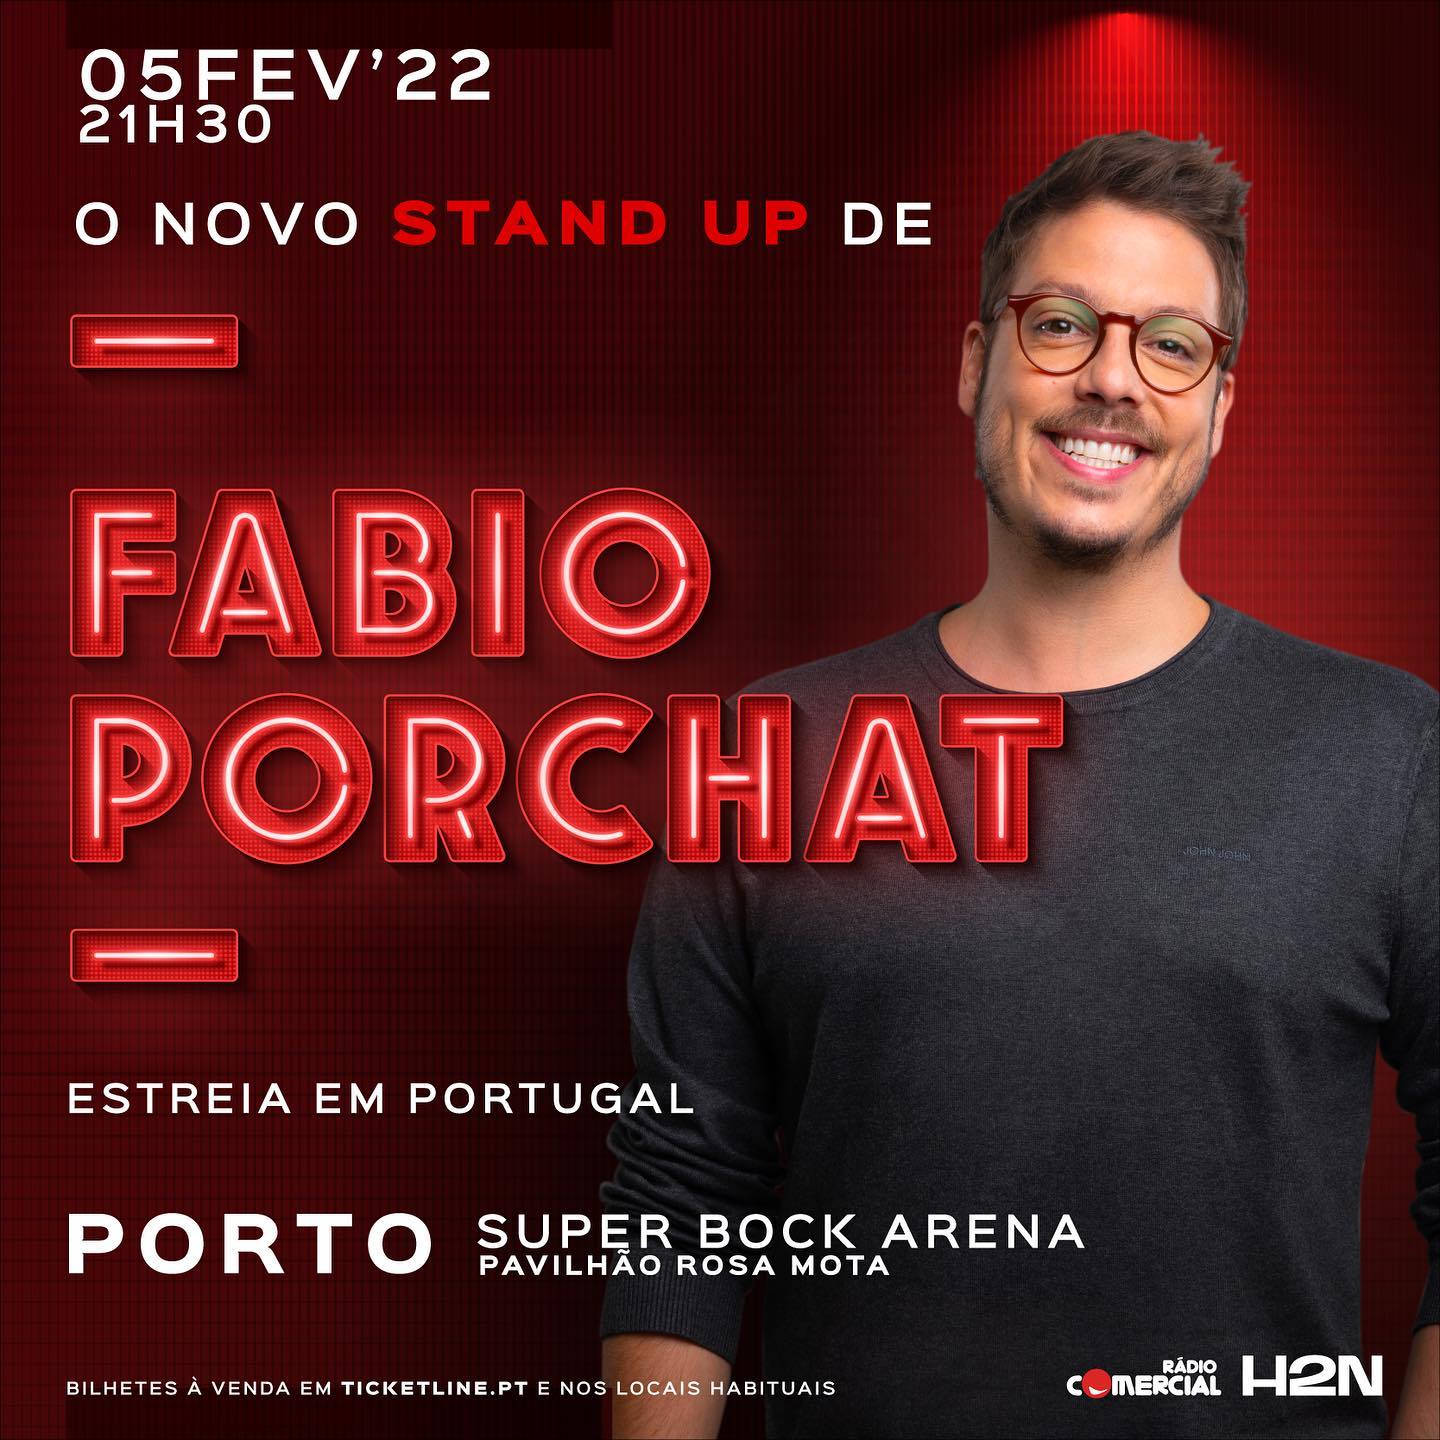 O novo stand-up de Fábio Porchat - Event